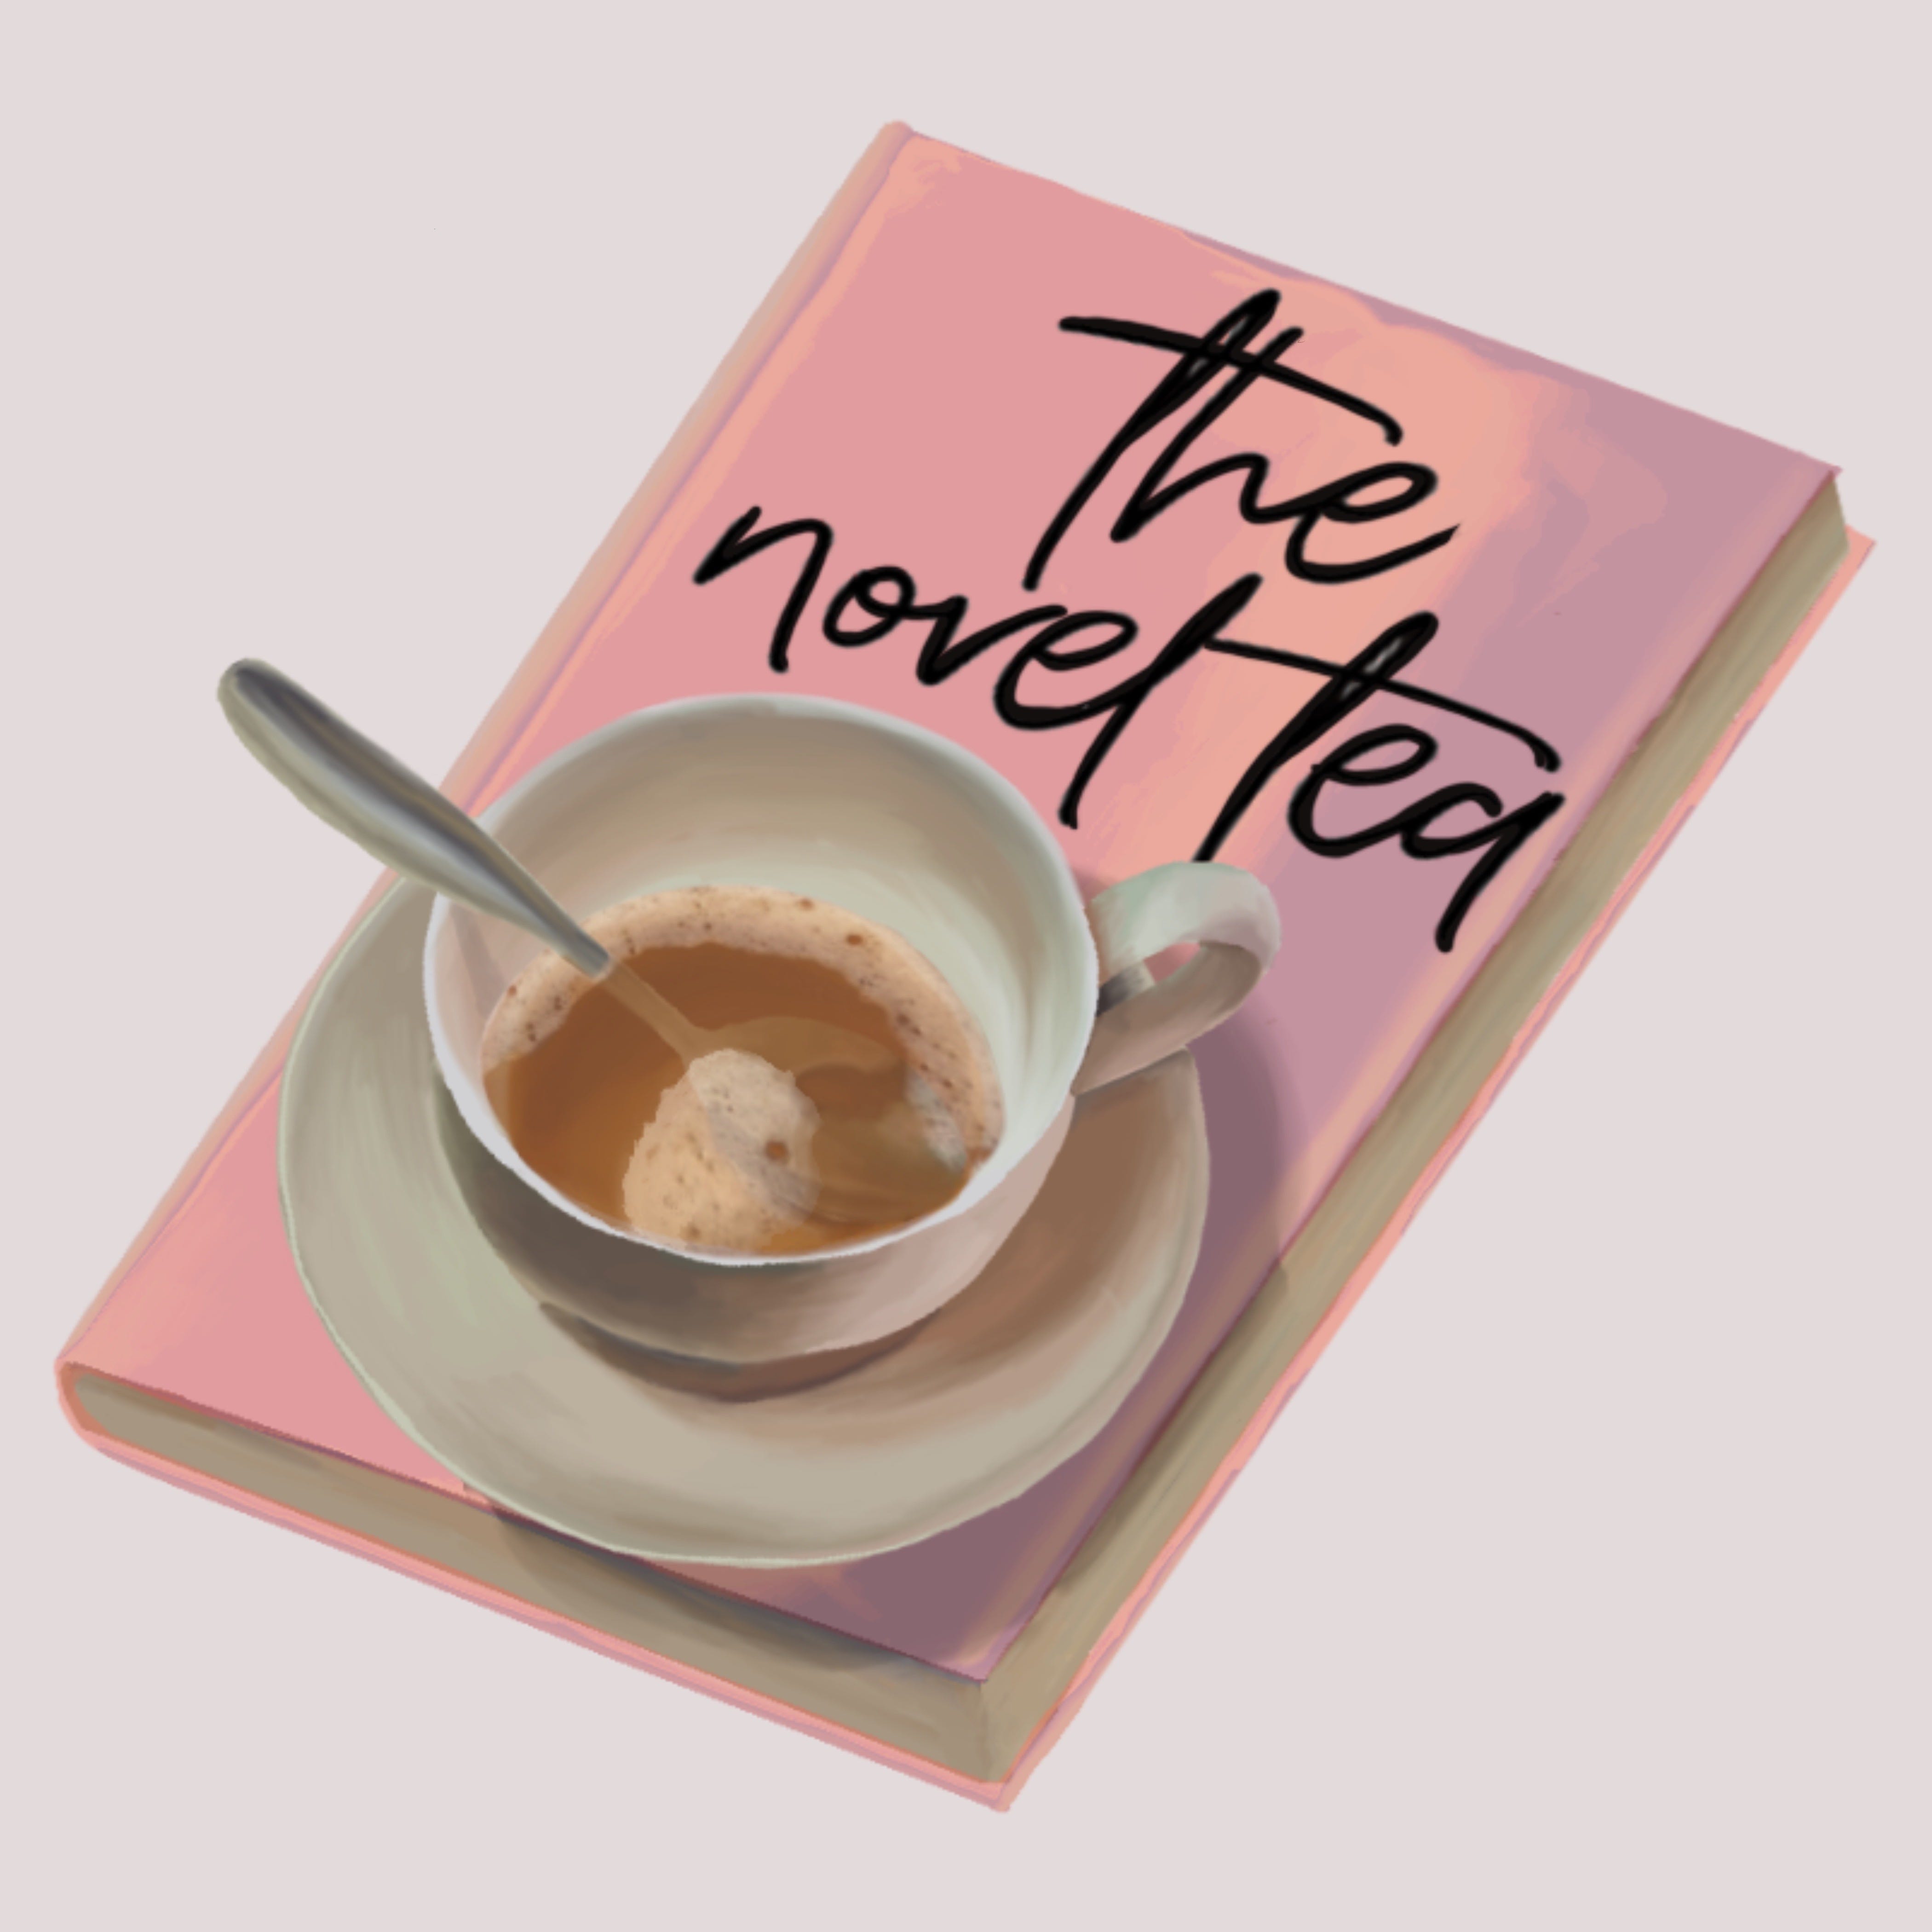 Artwork for The Novel Tea Newsletter